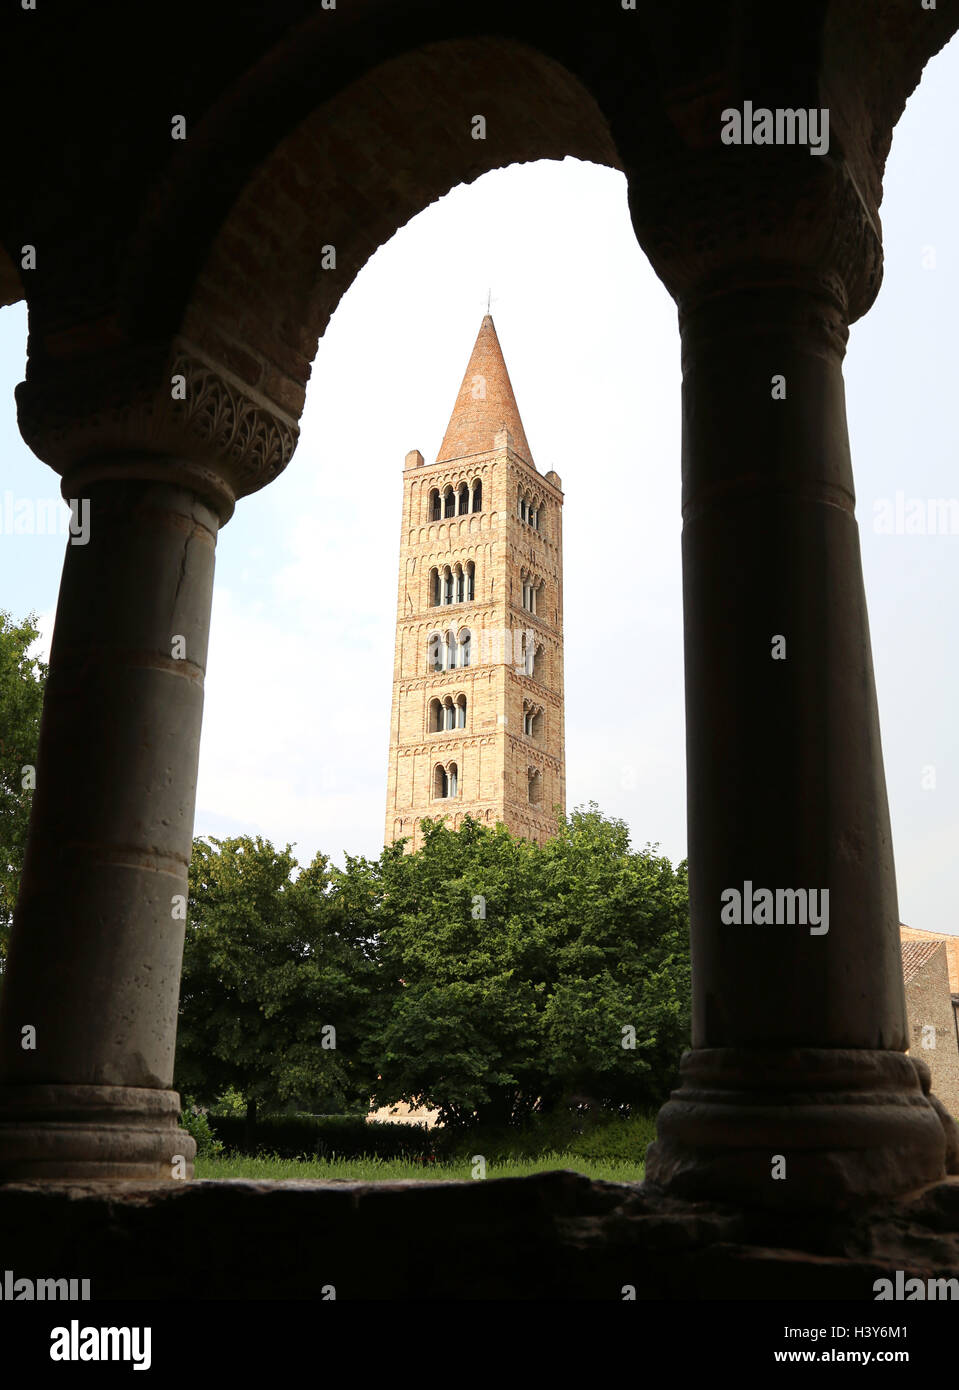 höchsten alten Glockenturm die berühmte Abtei von Pomposa historischen Gebäudes in der Po-Ebene in der Nähe von Ferrara in Italien Stockfoto